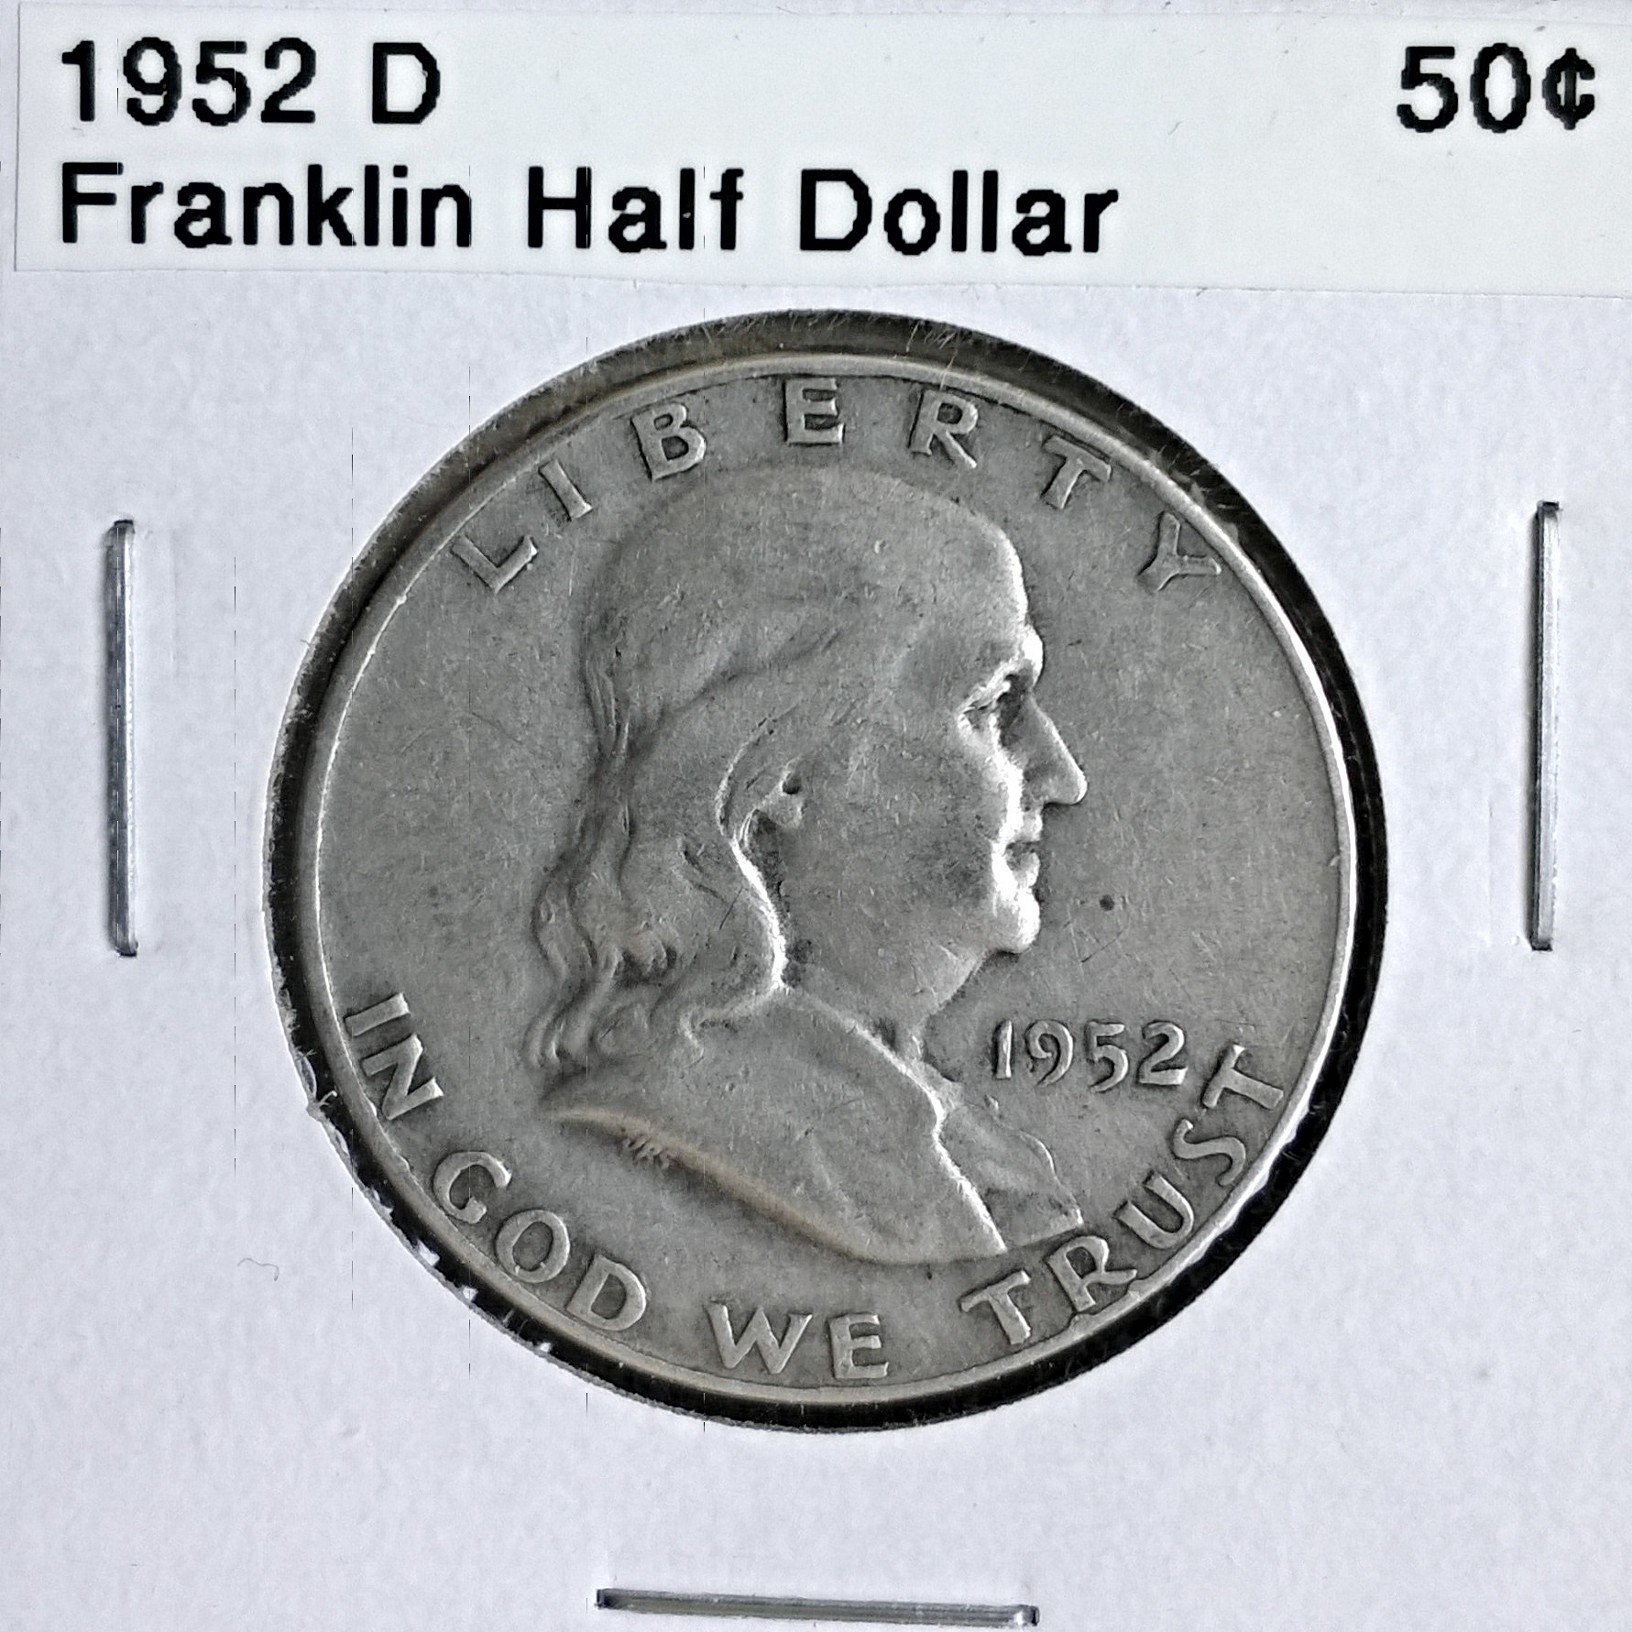 1952 D Franklin Half Dollar - for sale, buy now online - Item #1733741632 x 1632